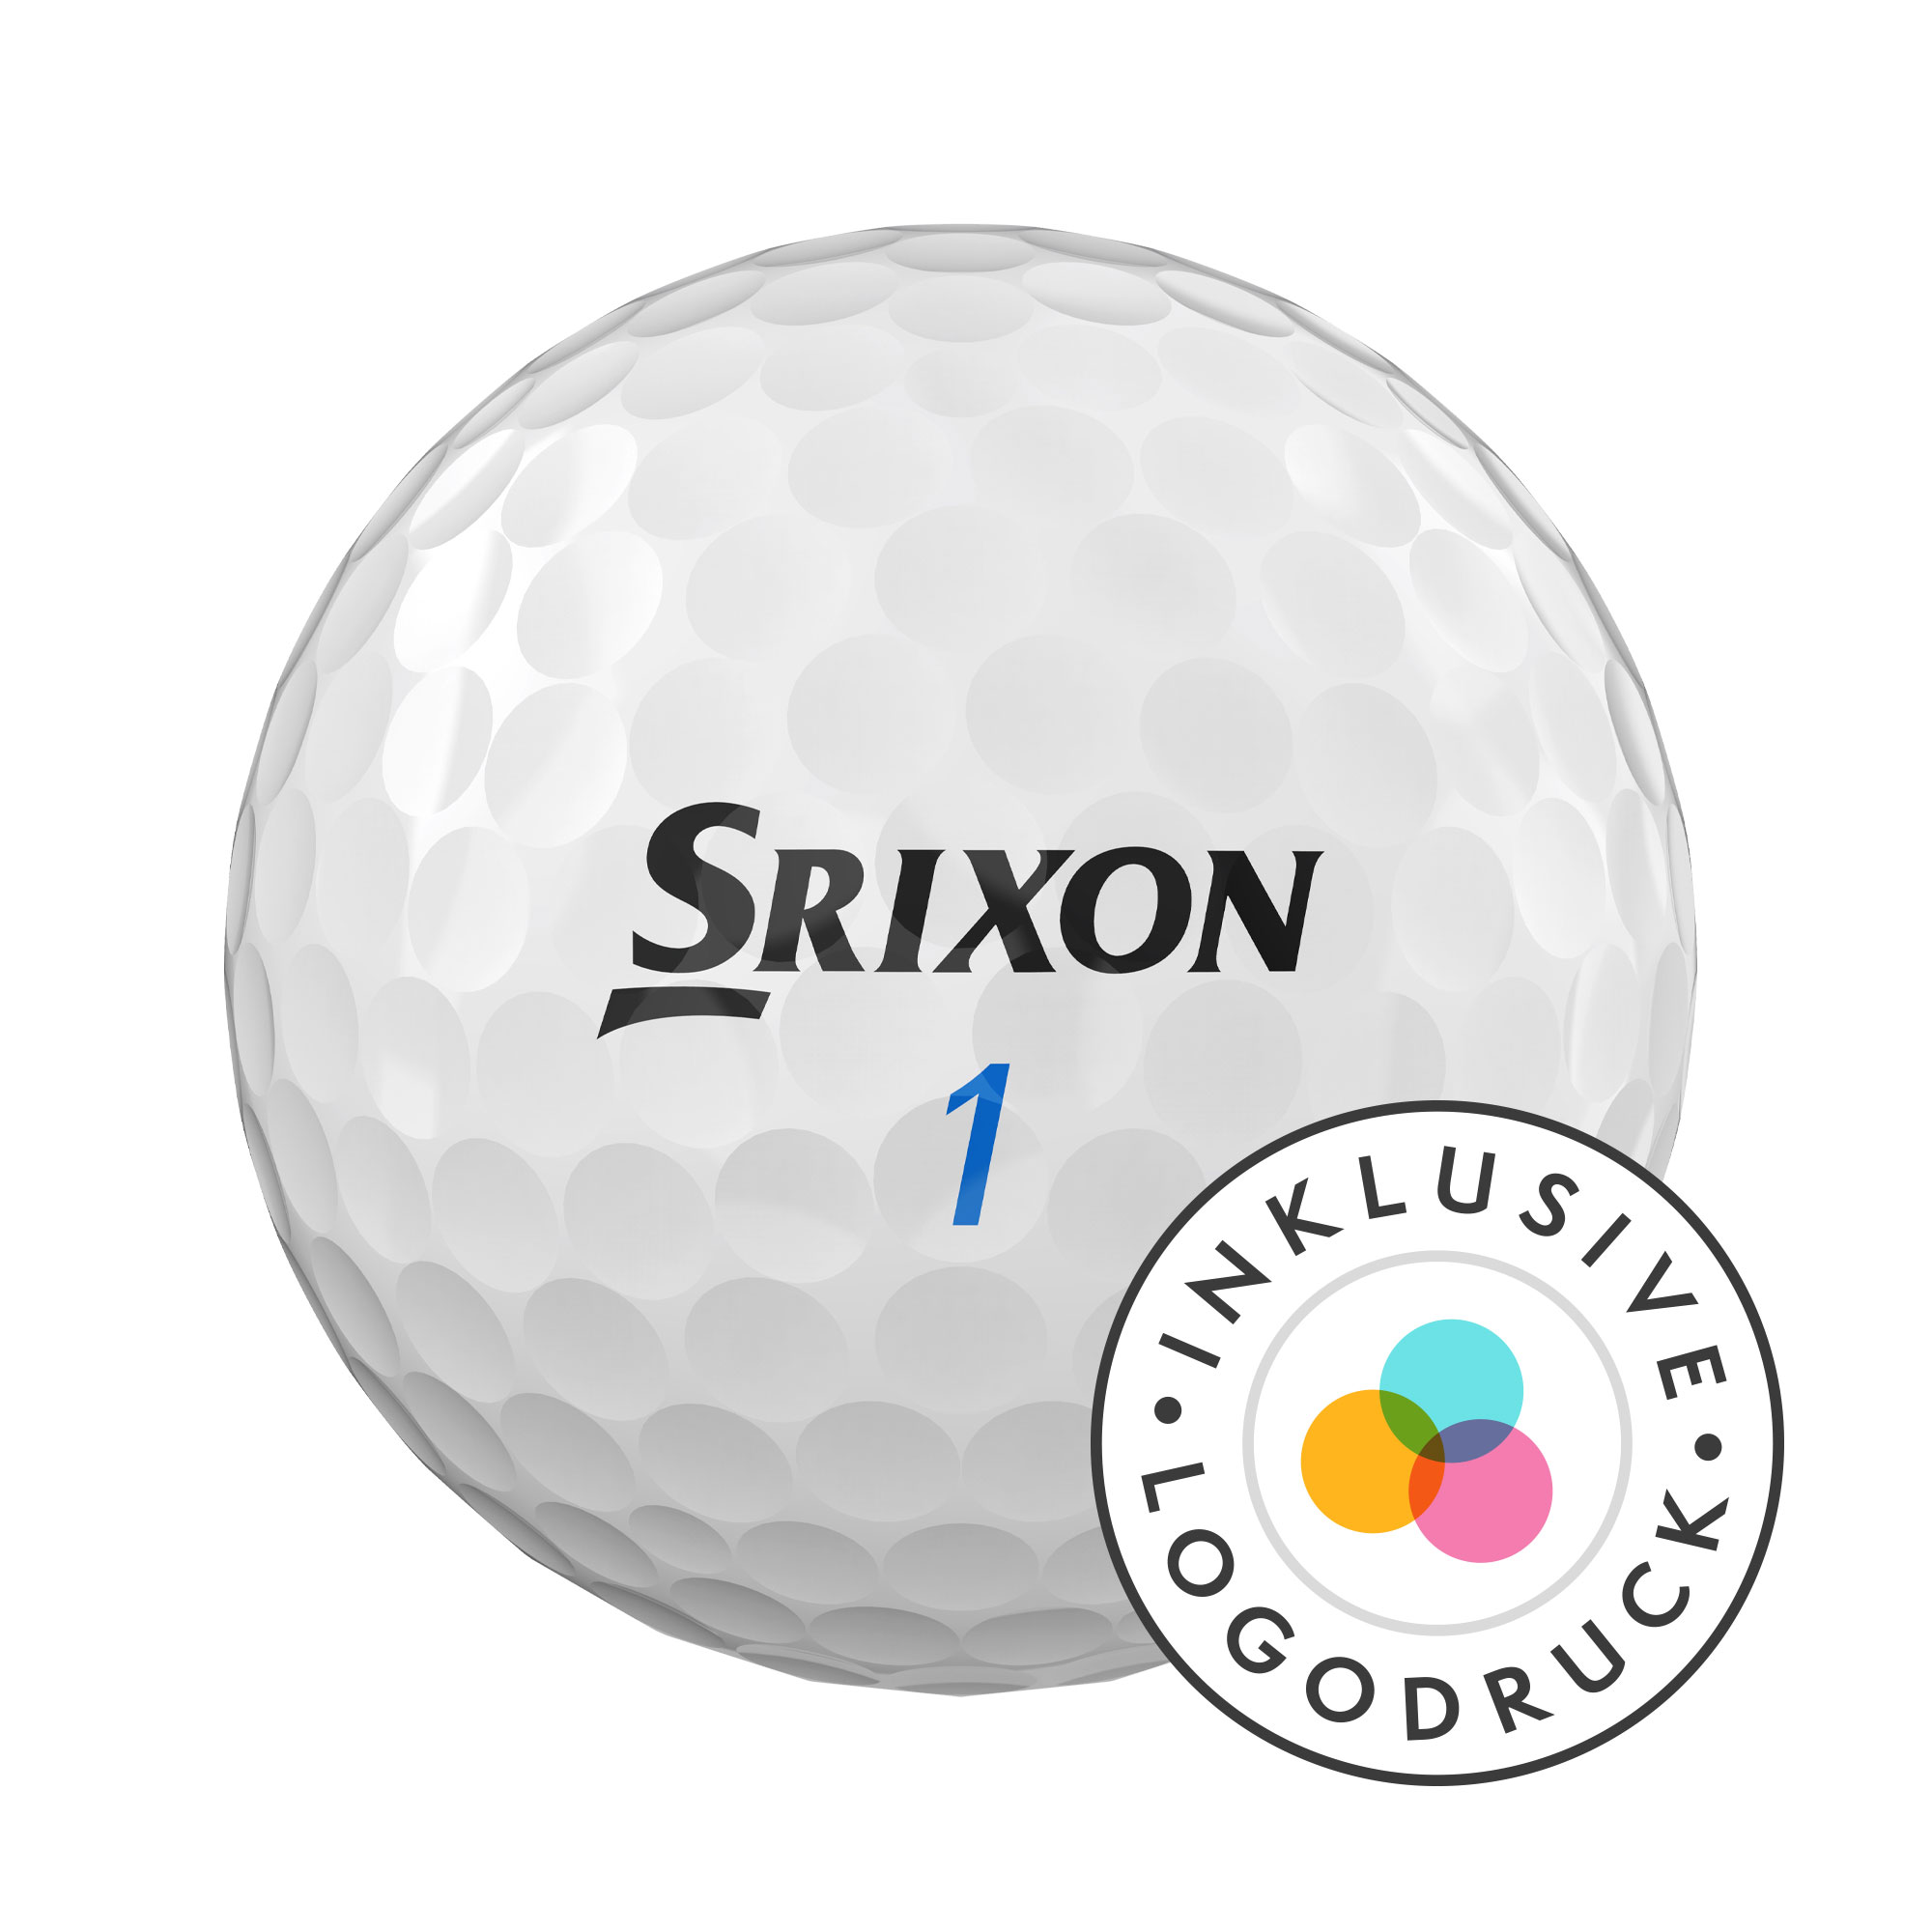 Srixon AD333 Golfbälle bedruckt, weiss (VPE à 12 Bälle)